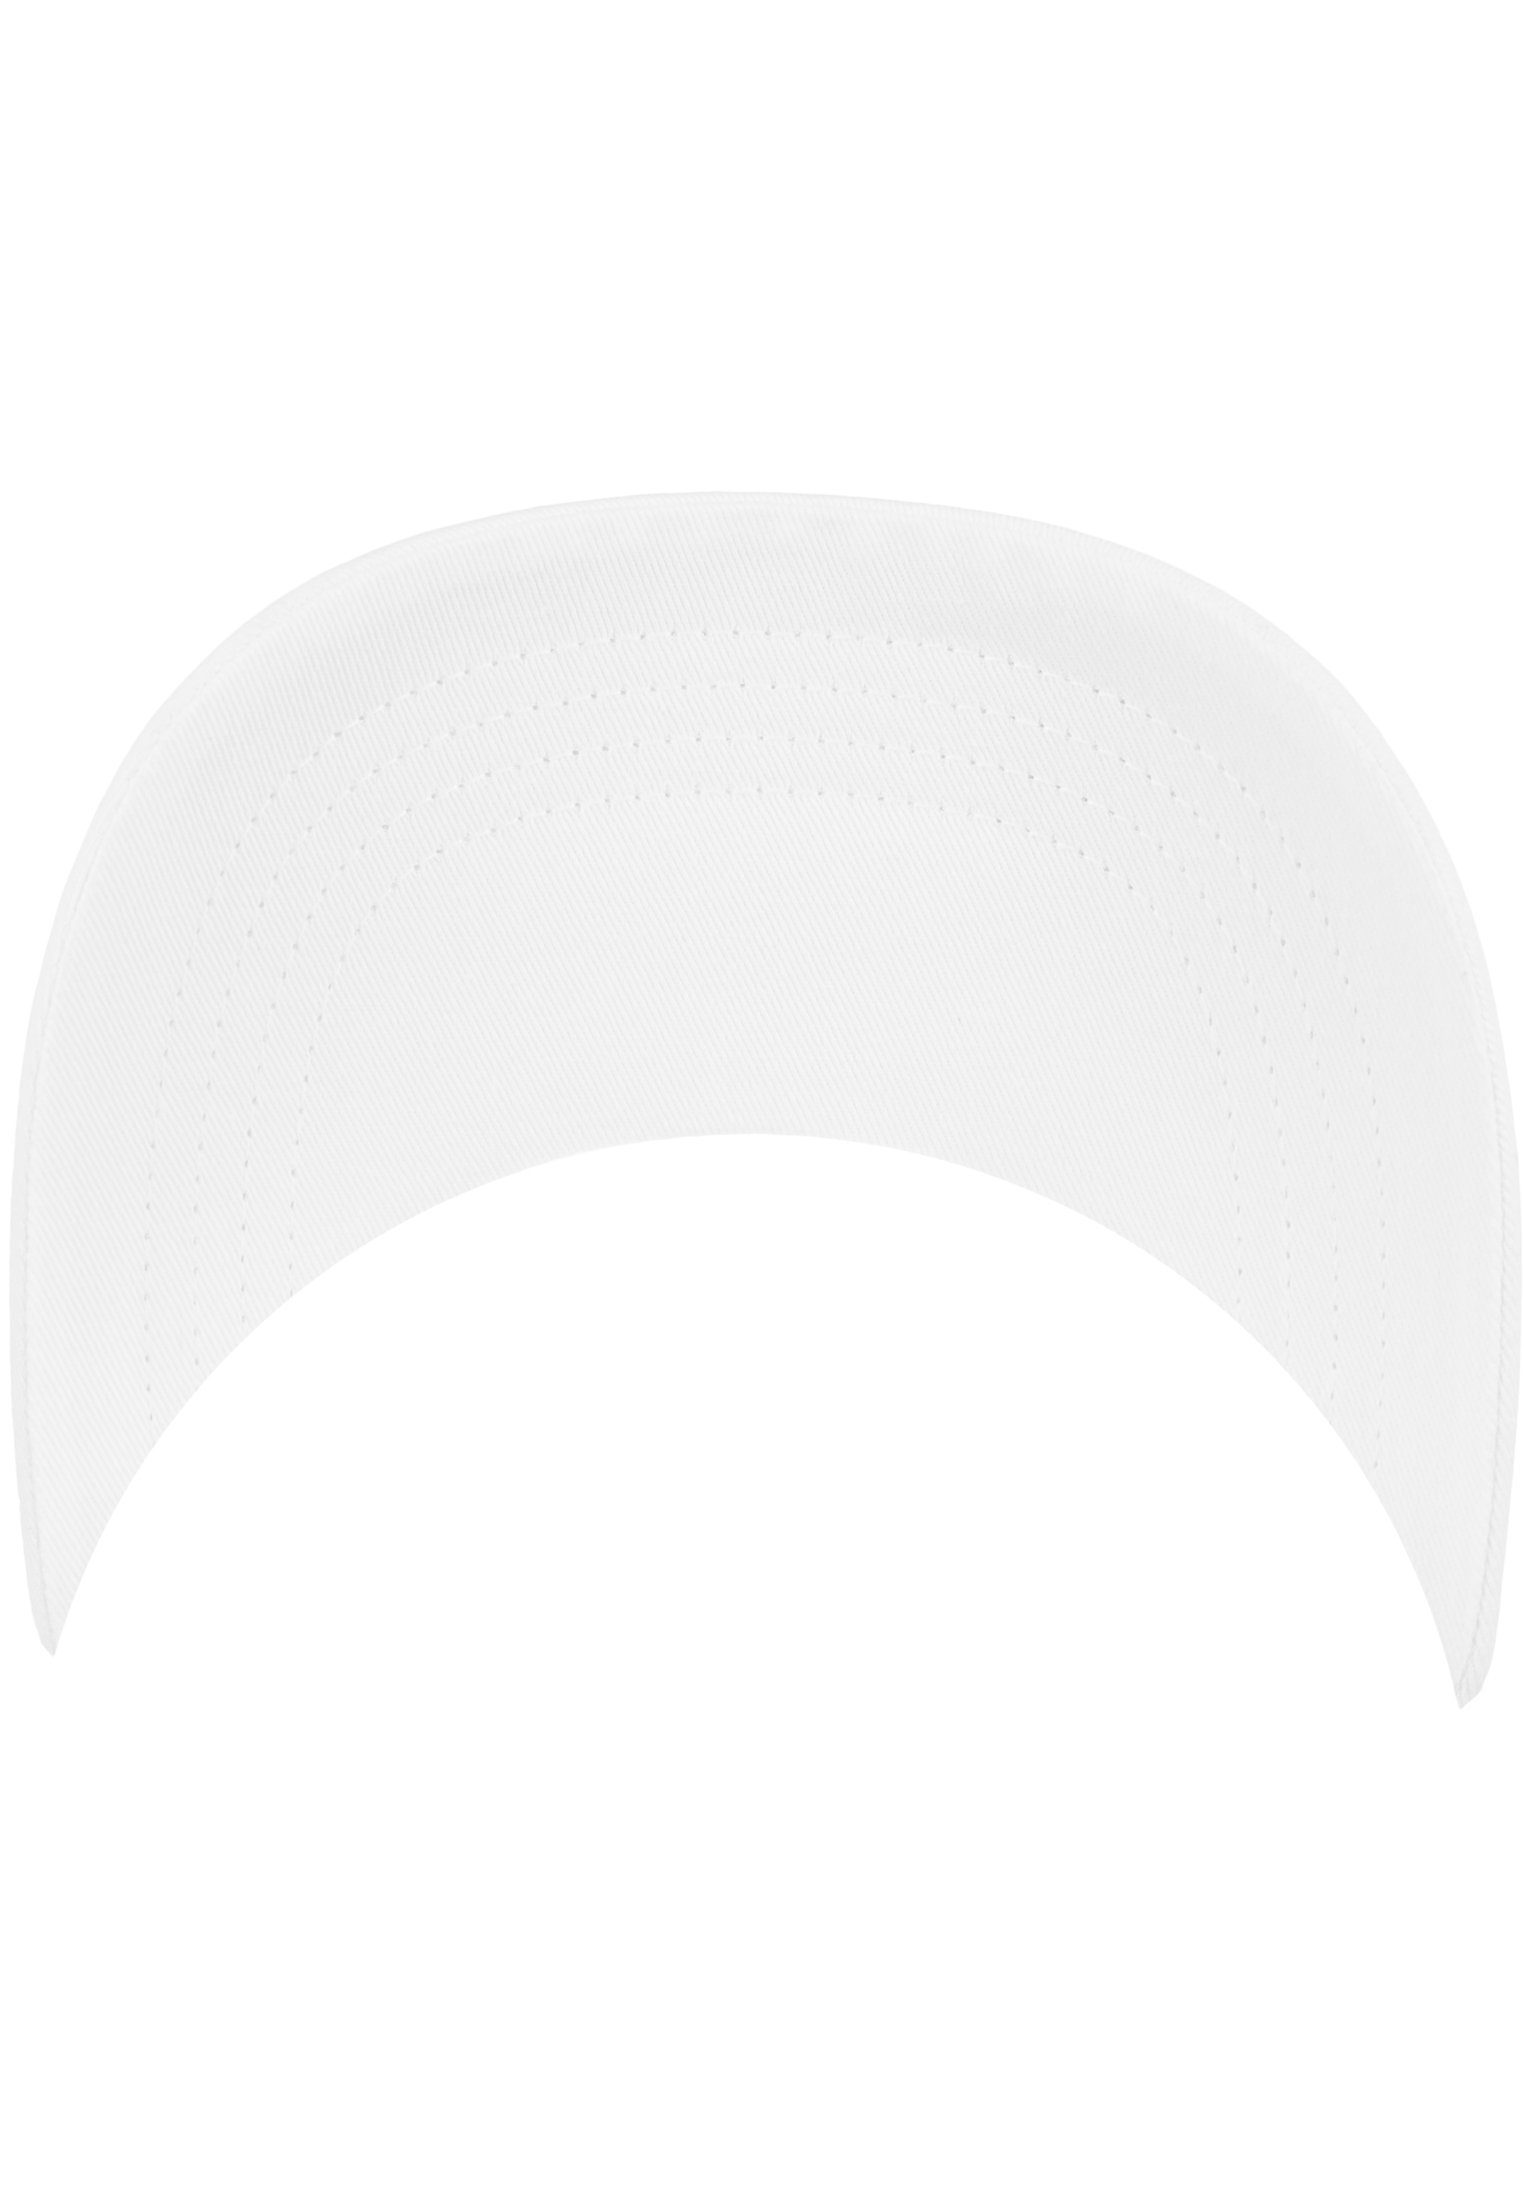 Flexfit Flex Cap Flexfit 6245CM Low White Cotton Twill Profile